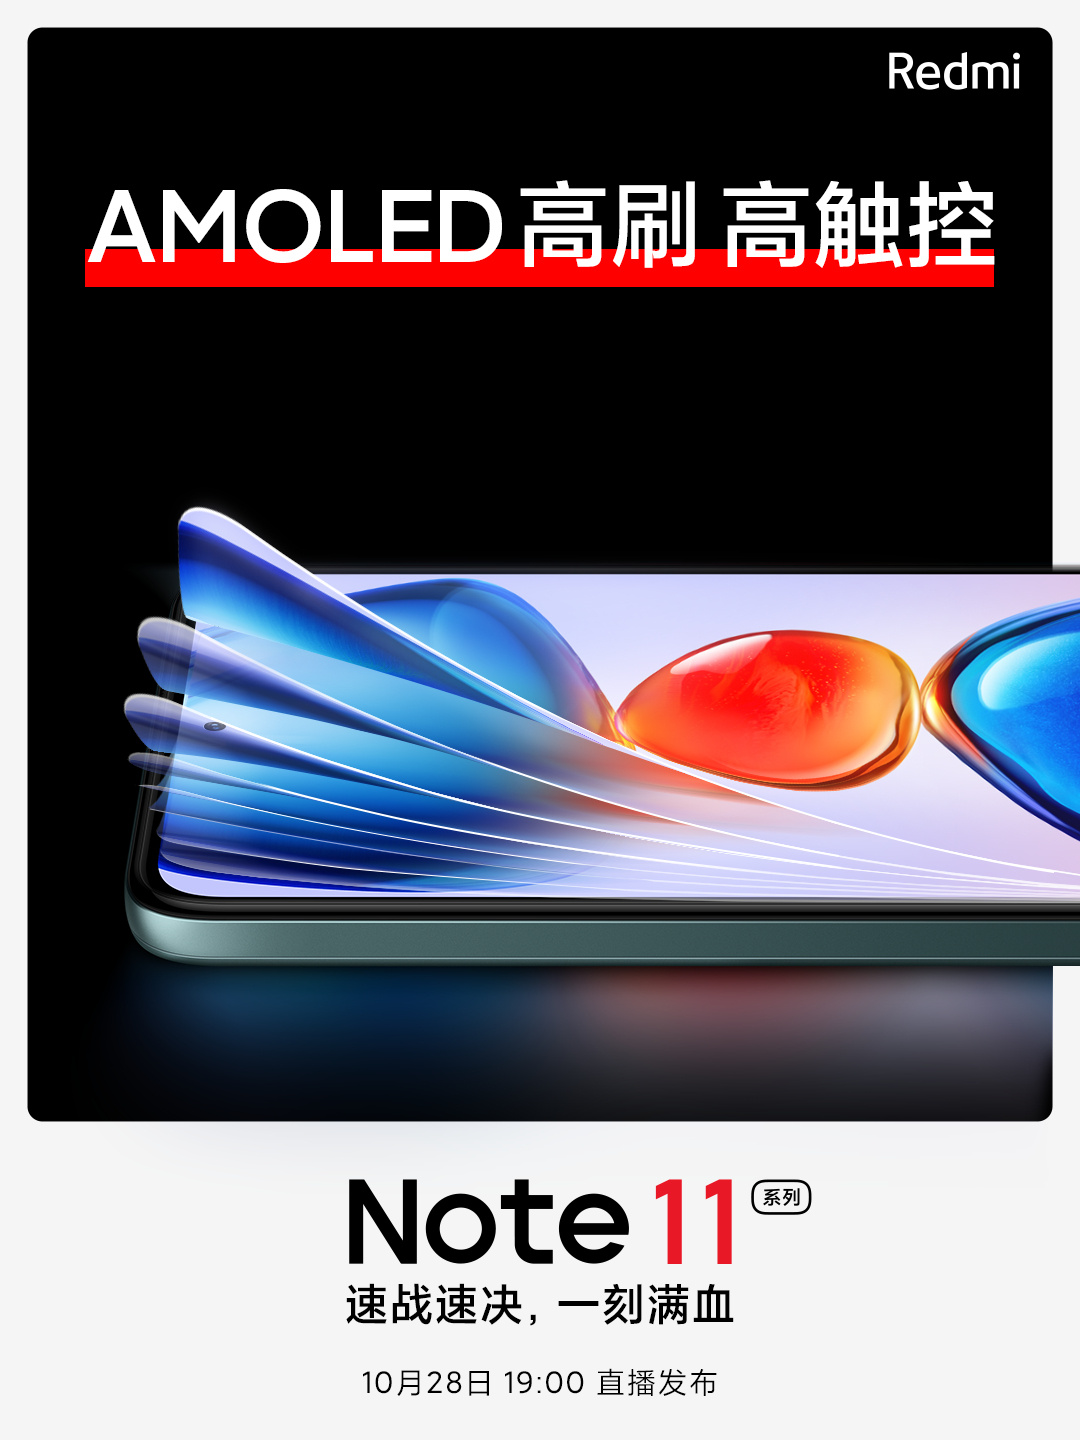  Xiaomi тизерит AMOLED-экраны в новом Redmi Note 11 Xiaomi  - xiaomi_tizerit_amoled_ekrany_v_redmi_note_11_no_est_nuans_2